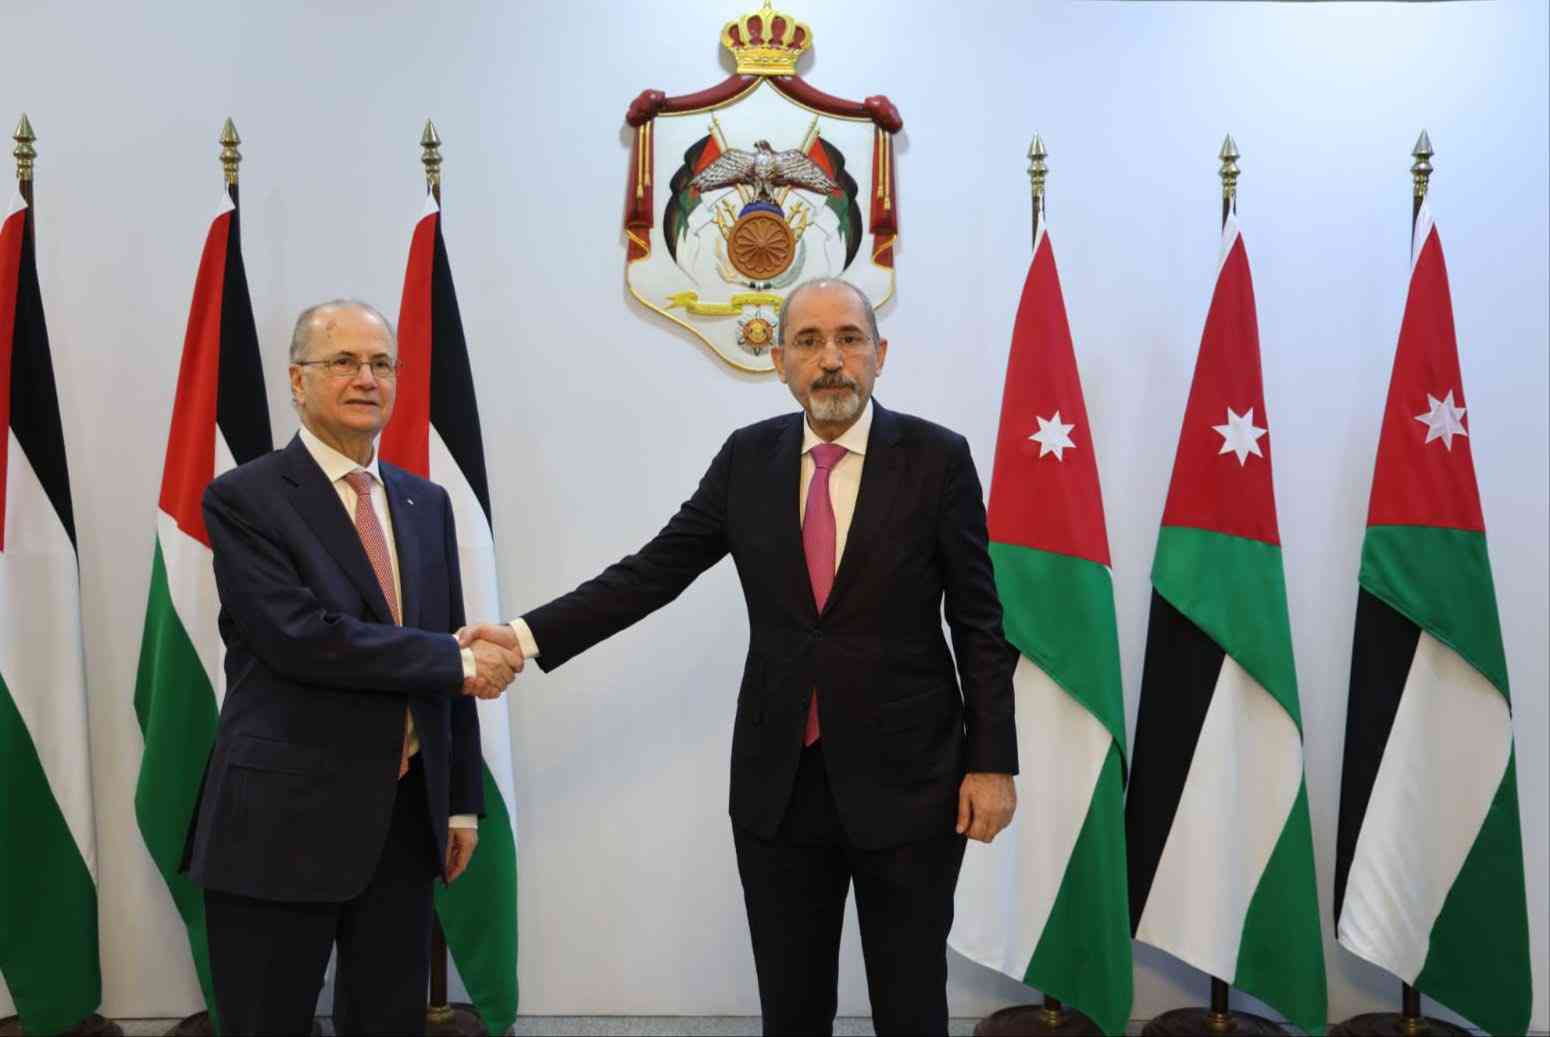 الصفدي يطلع على الرؤية الإصلاحية للحكومة الفلسطينية الجديدة